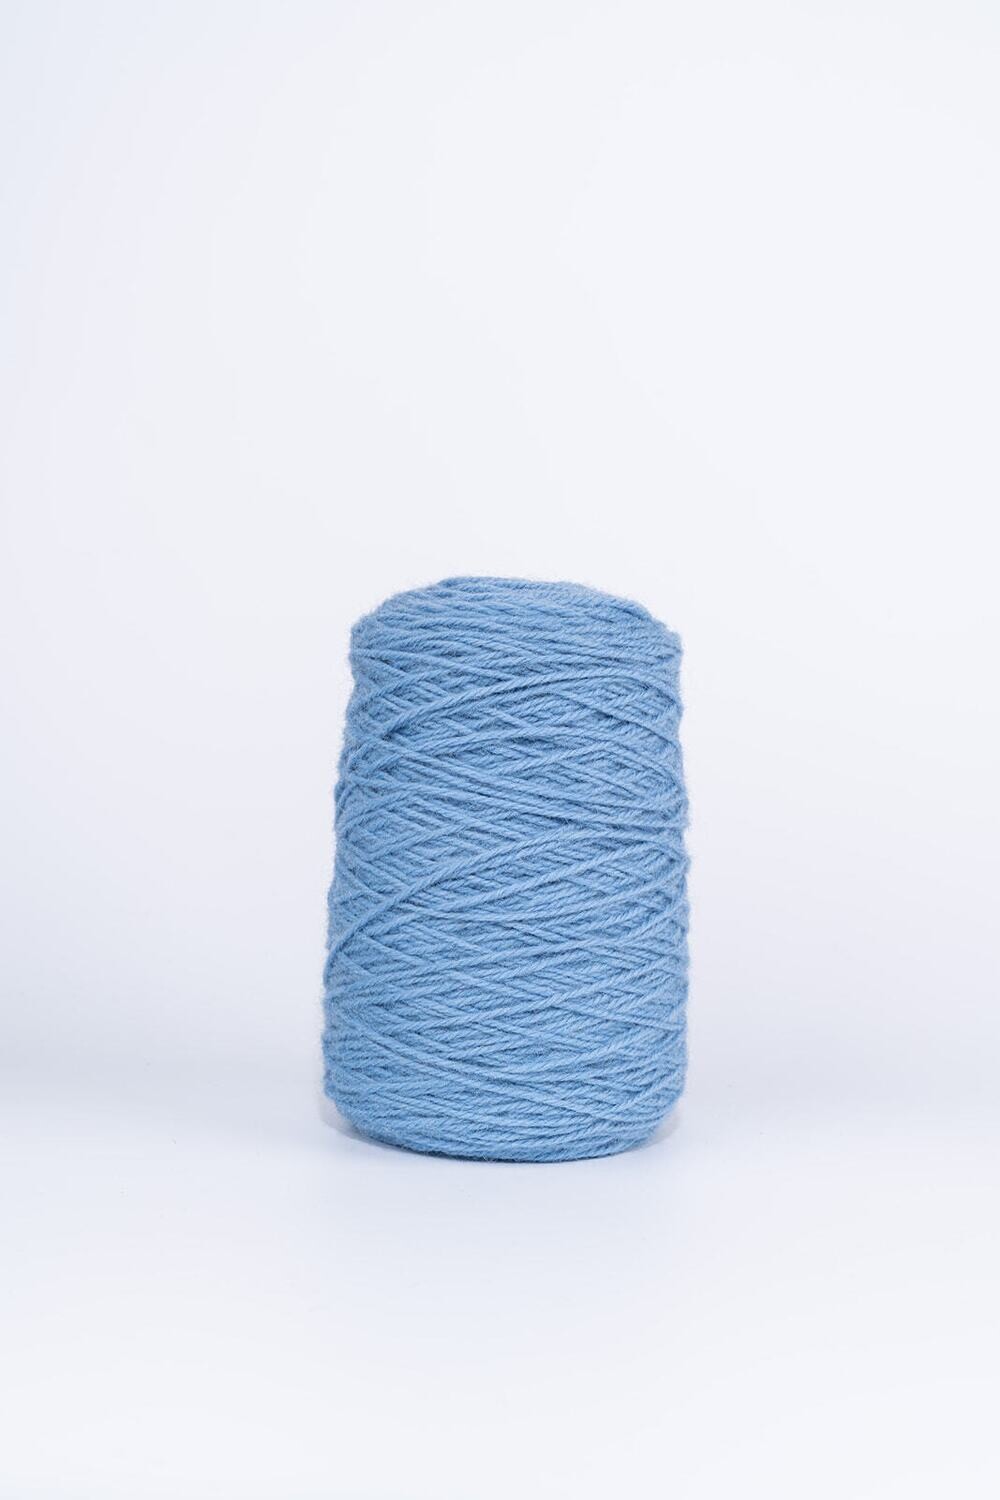 100% Wool Rug Yarn On Cones - Sky Blue